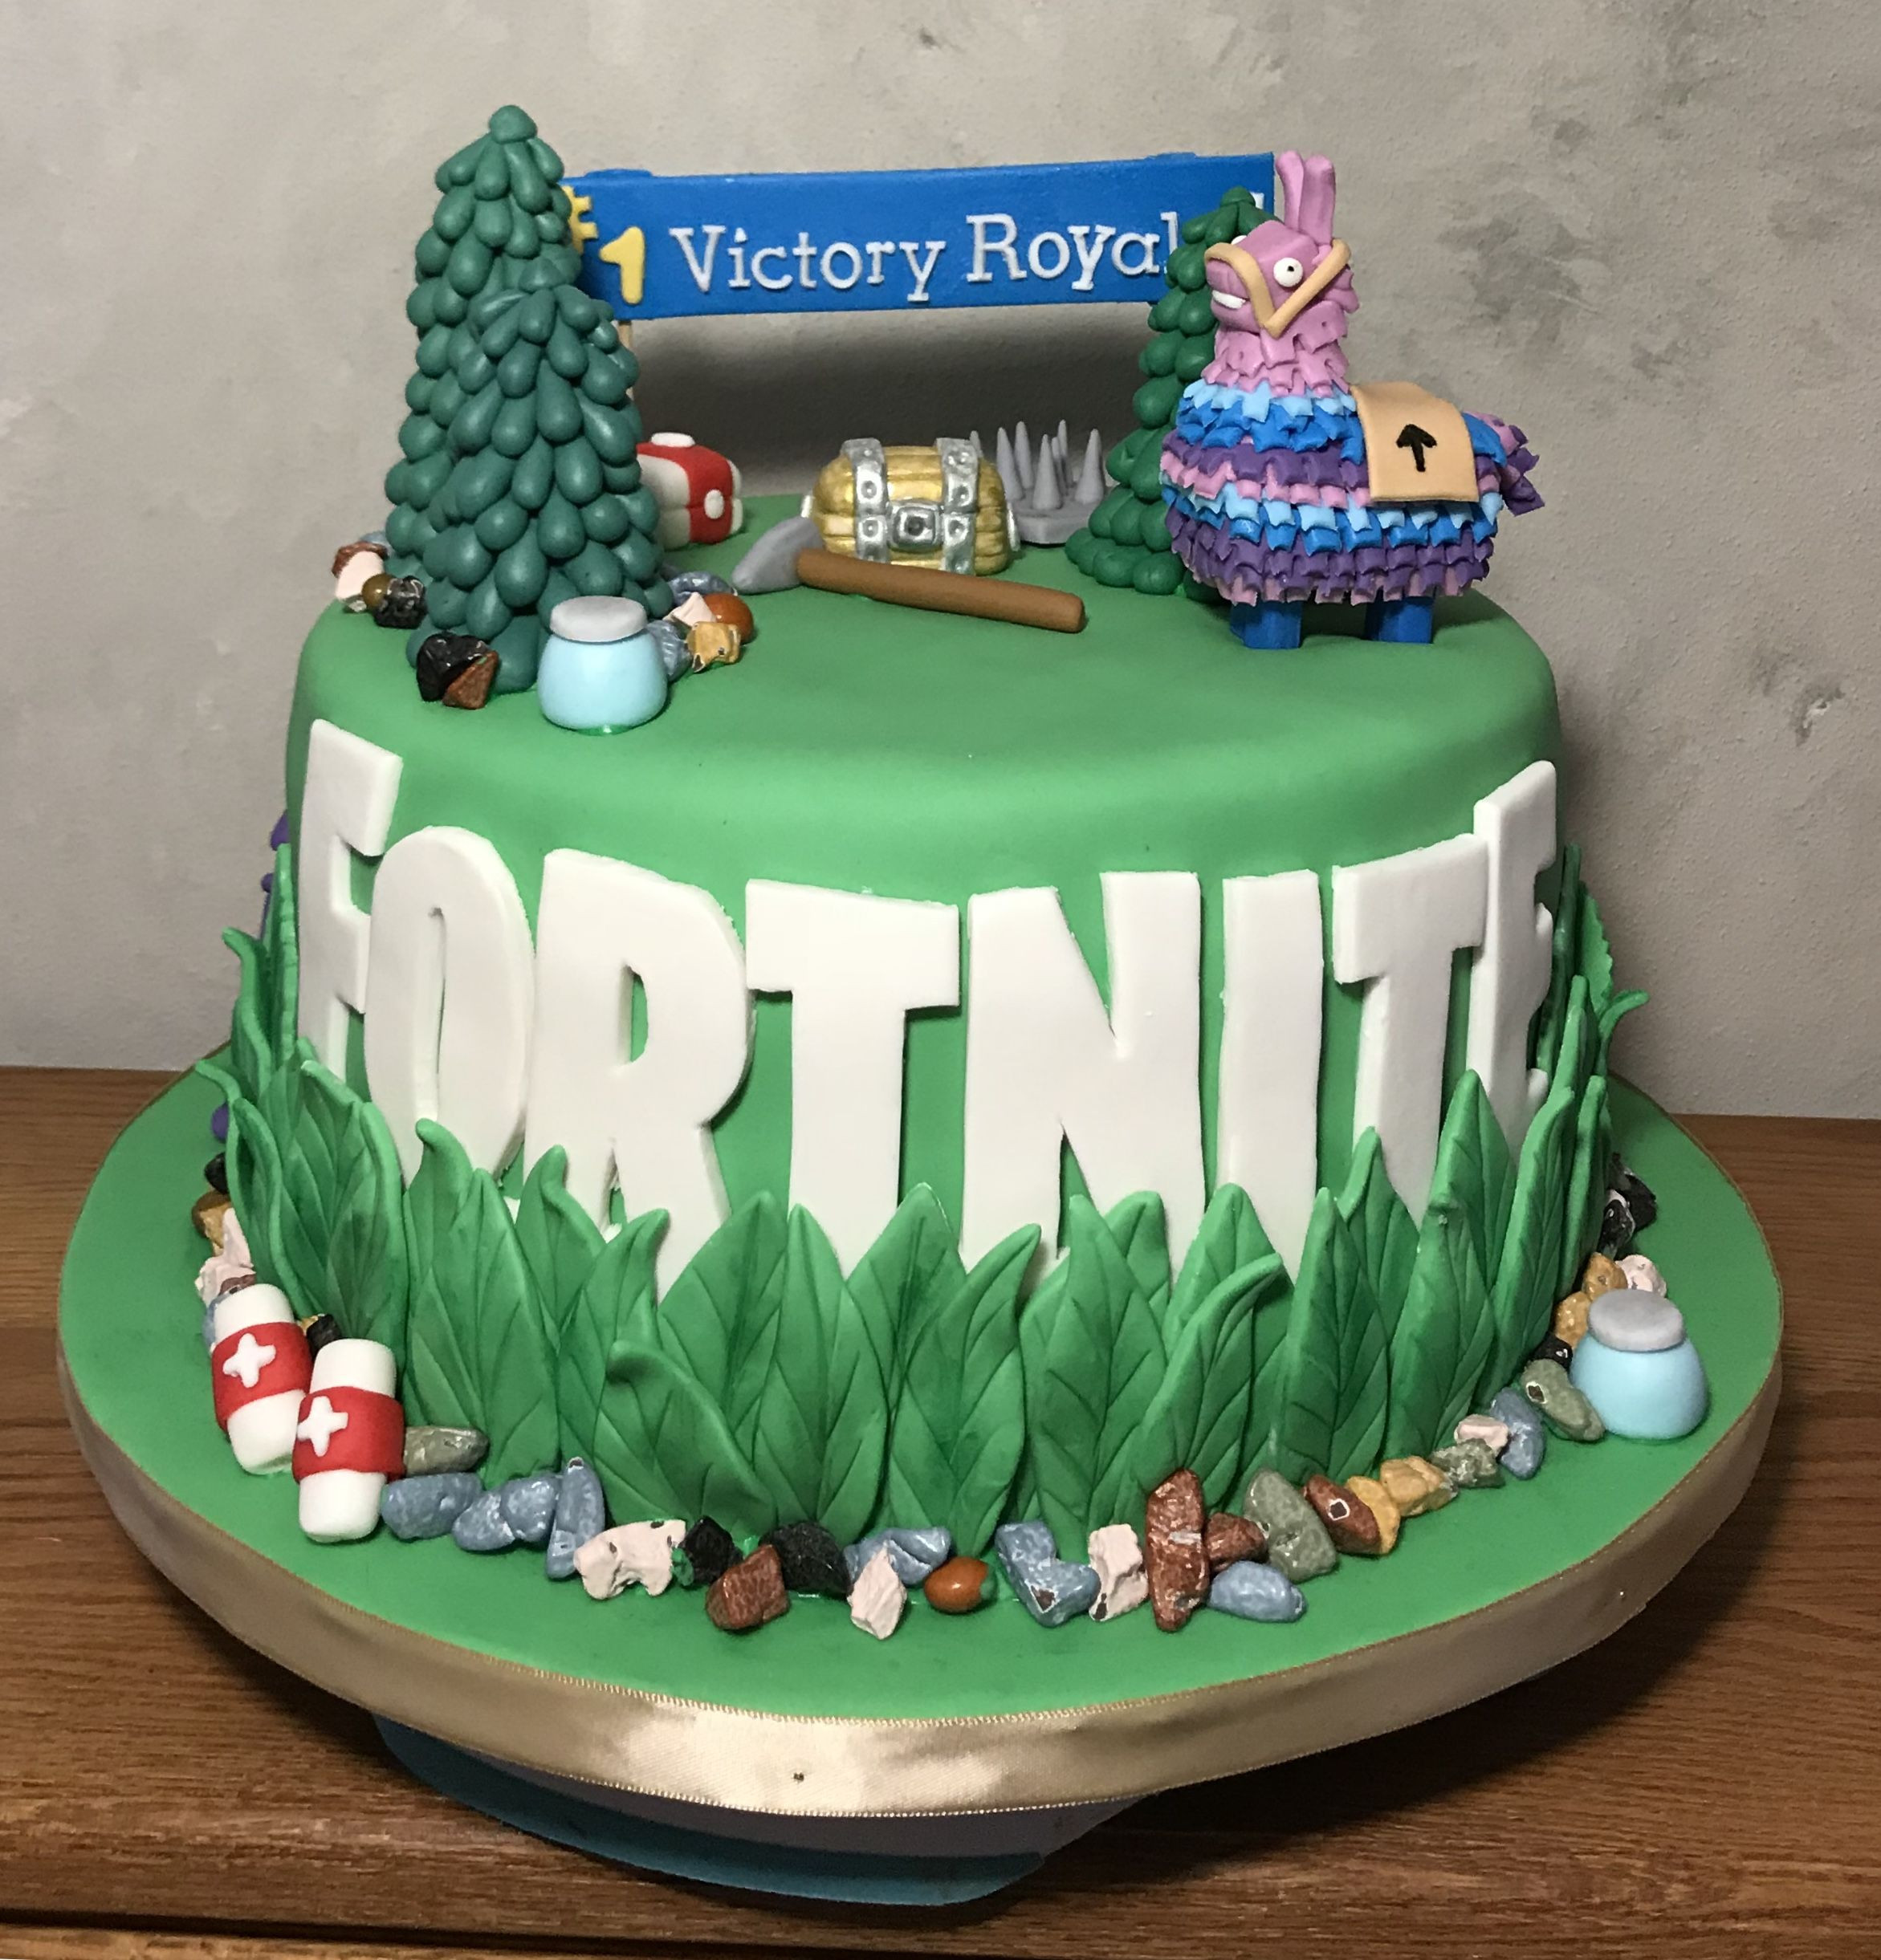 Geburtstagskuchen Fortnite
 Fortnite cake Cakes by Carrie in 2019